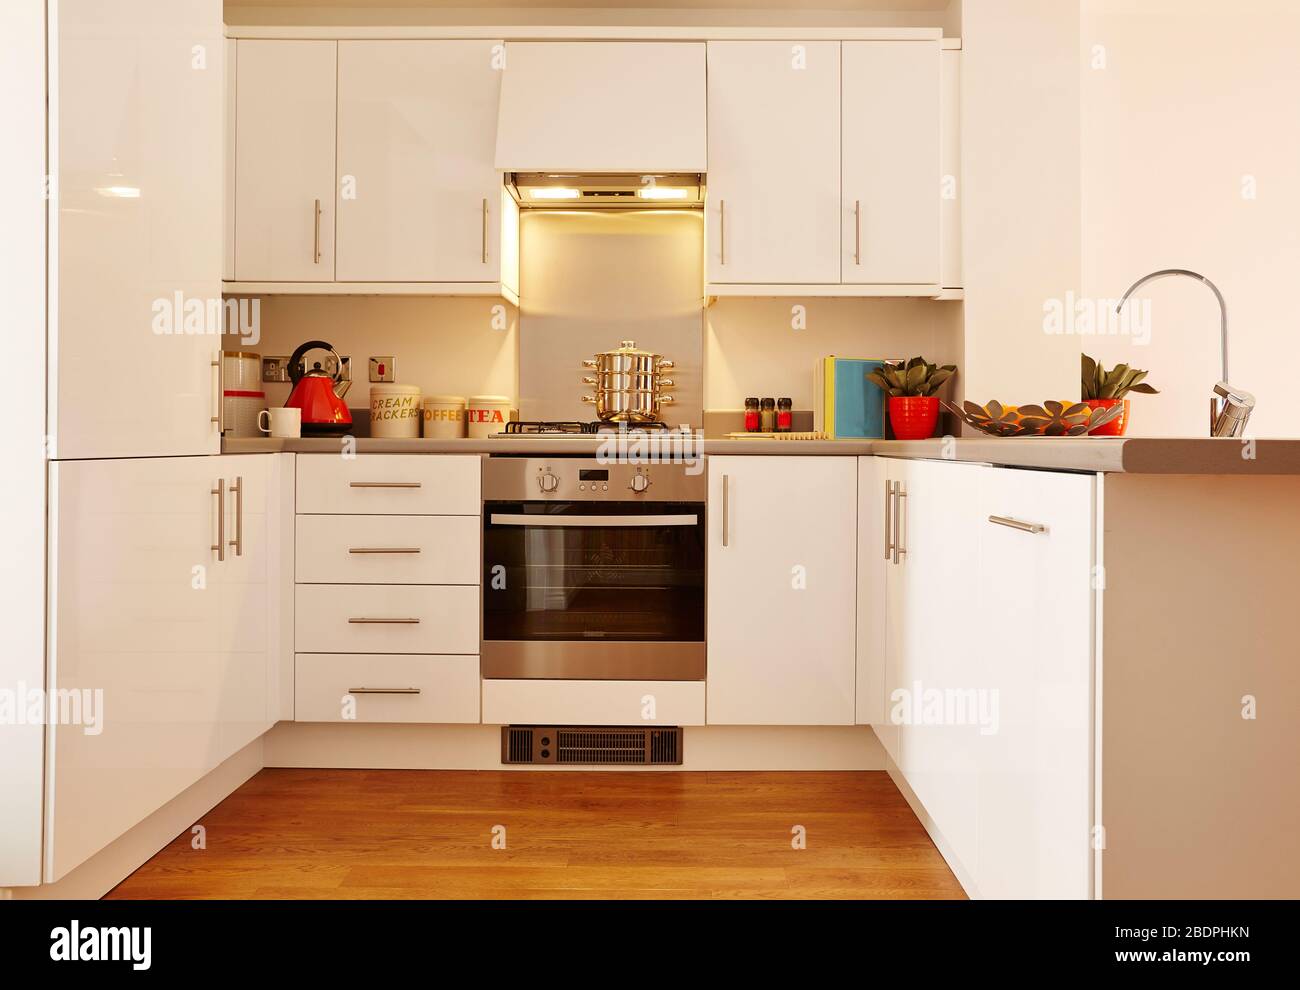 Moderne Einrichtung einer großen Küche mit modularen Möbeln in weißer Farbe. Modernes Design einer Wohnküche. Stockfoto